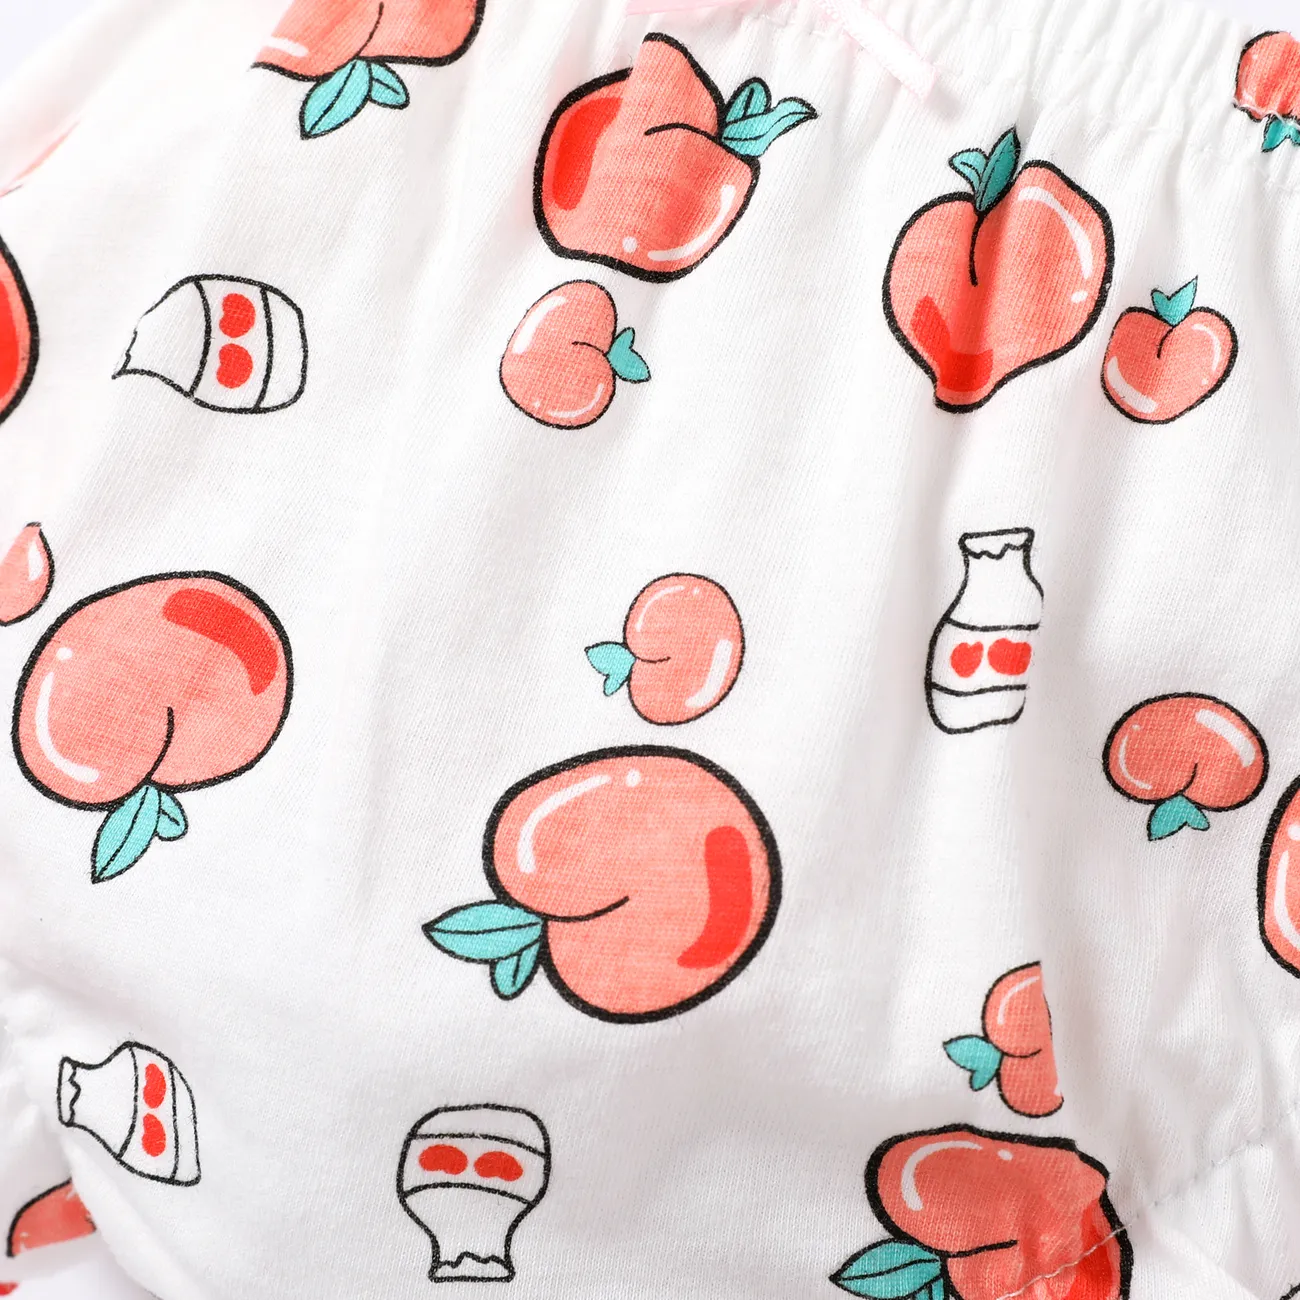 Süße Früchte und Gemüse Mädchen Unterwäsche Set - 100% Baumwolle, Agaric Edge rosa big image 1